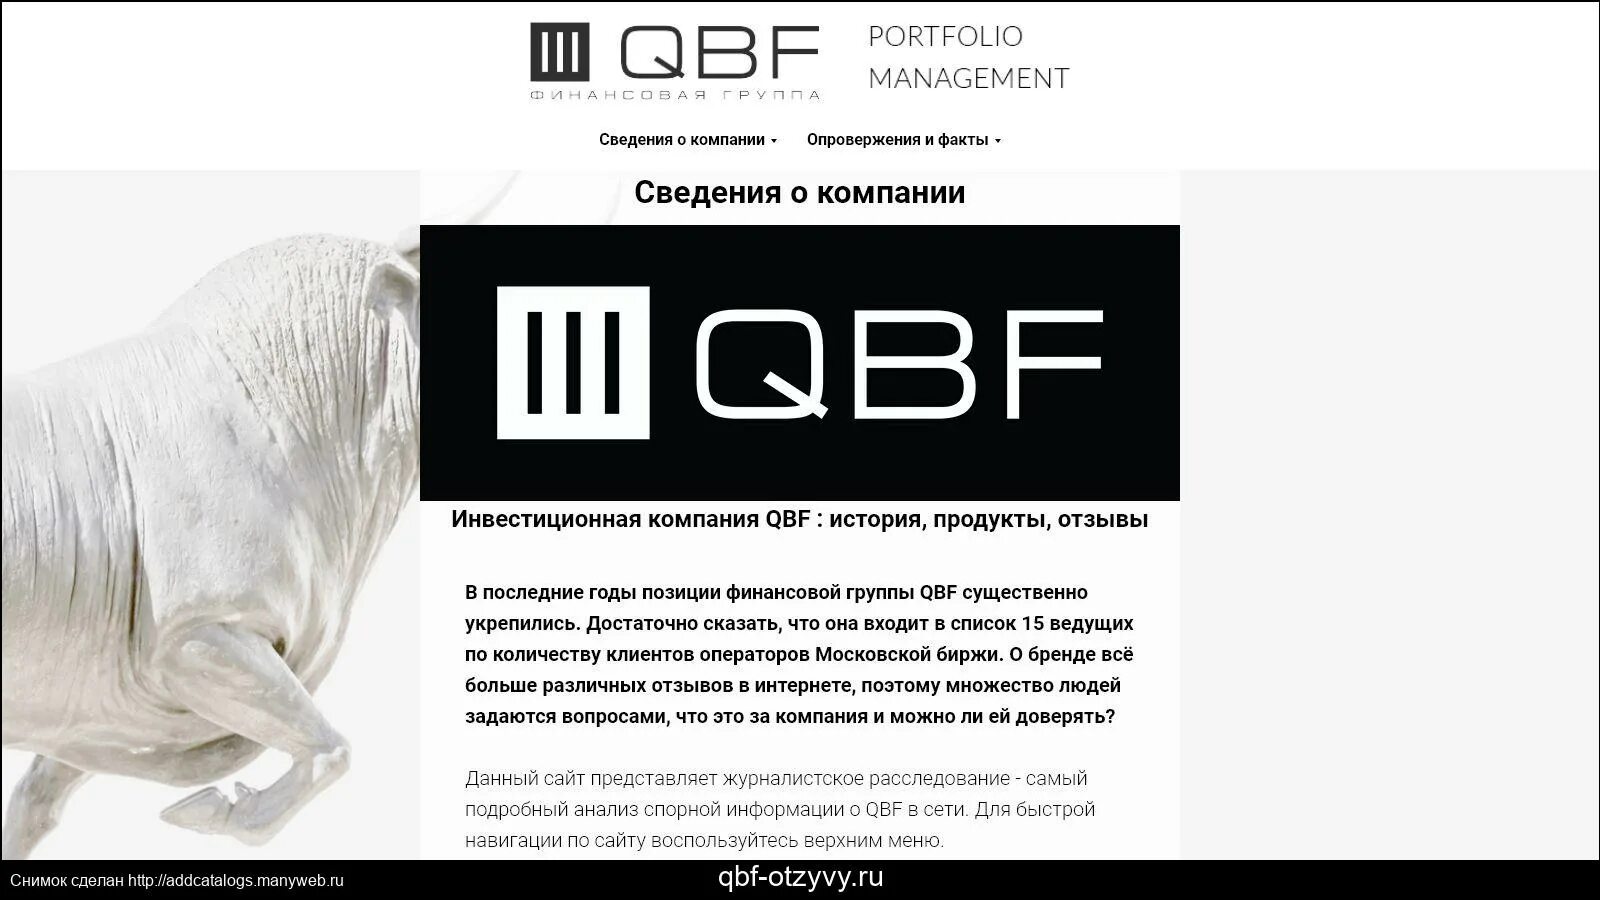 Компания QBF. Финансовая группа QBF. ИК КЬЮБИЭФ. QBF лого. Product ru отзывы